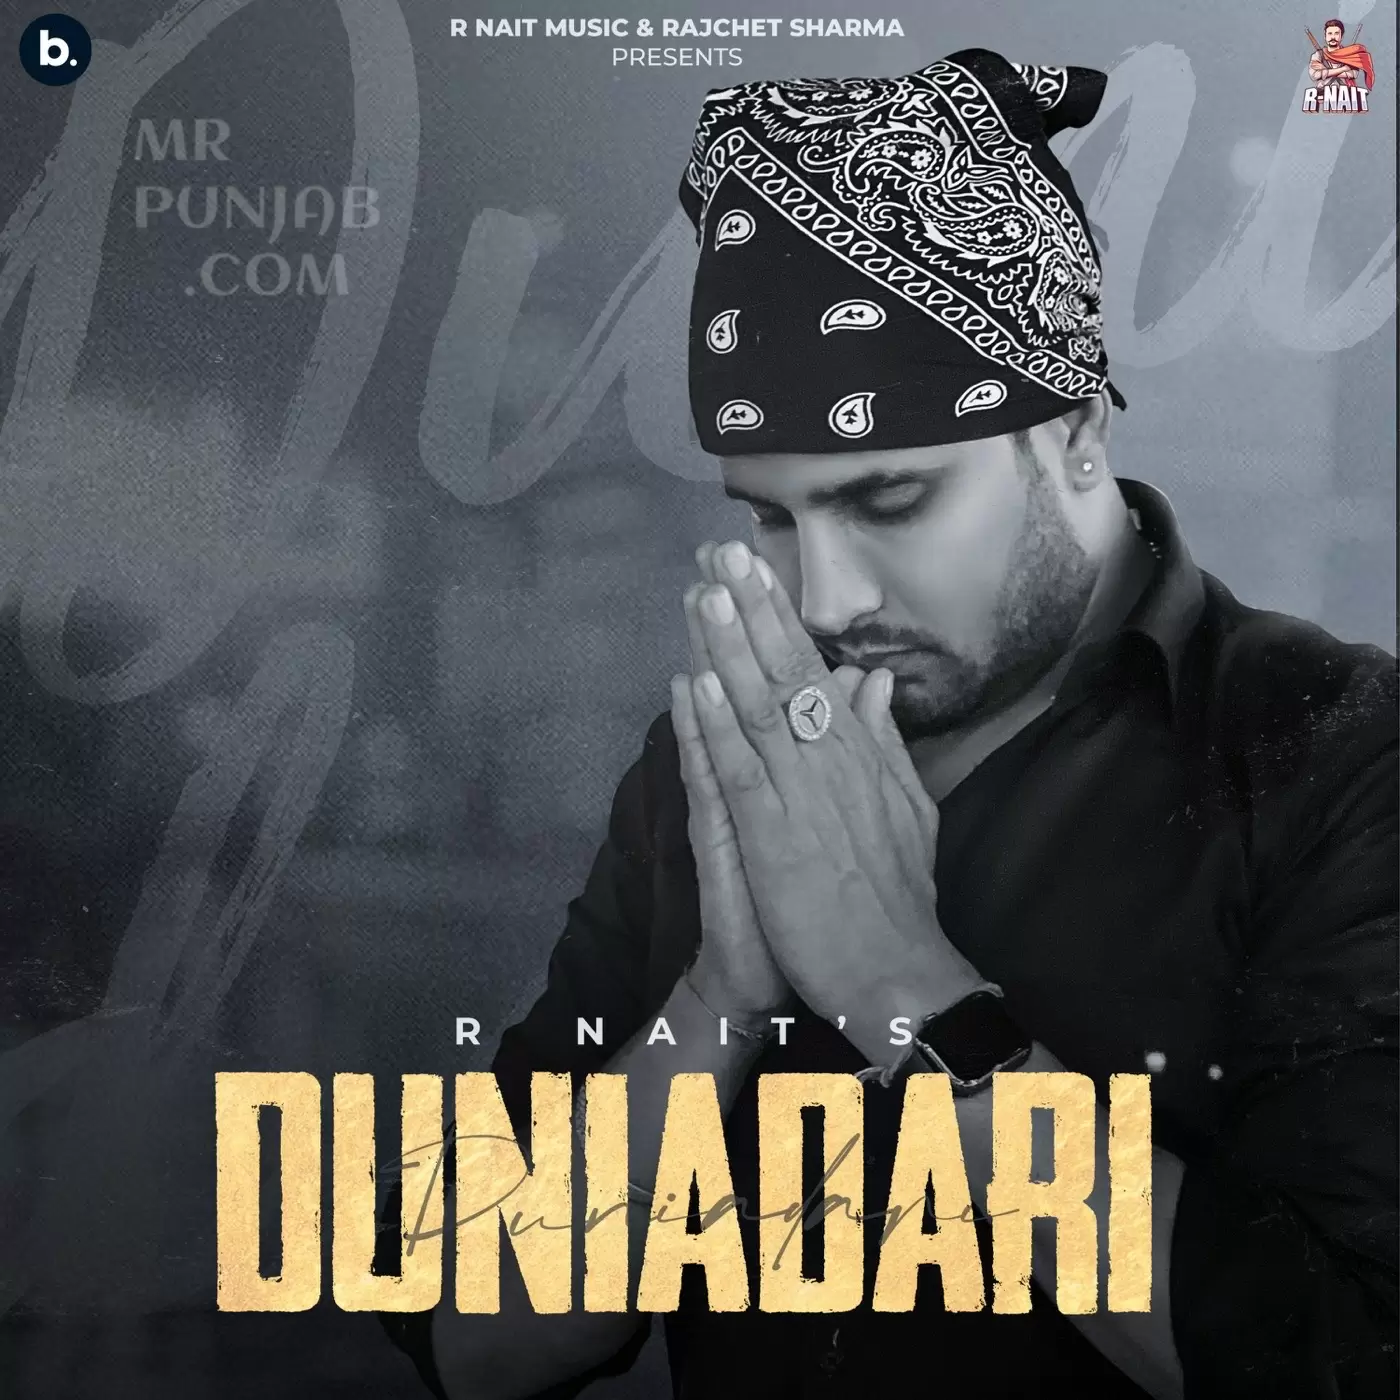 Duniadari R Nait Mp3 Download Song - Mr-Punjab